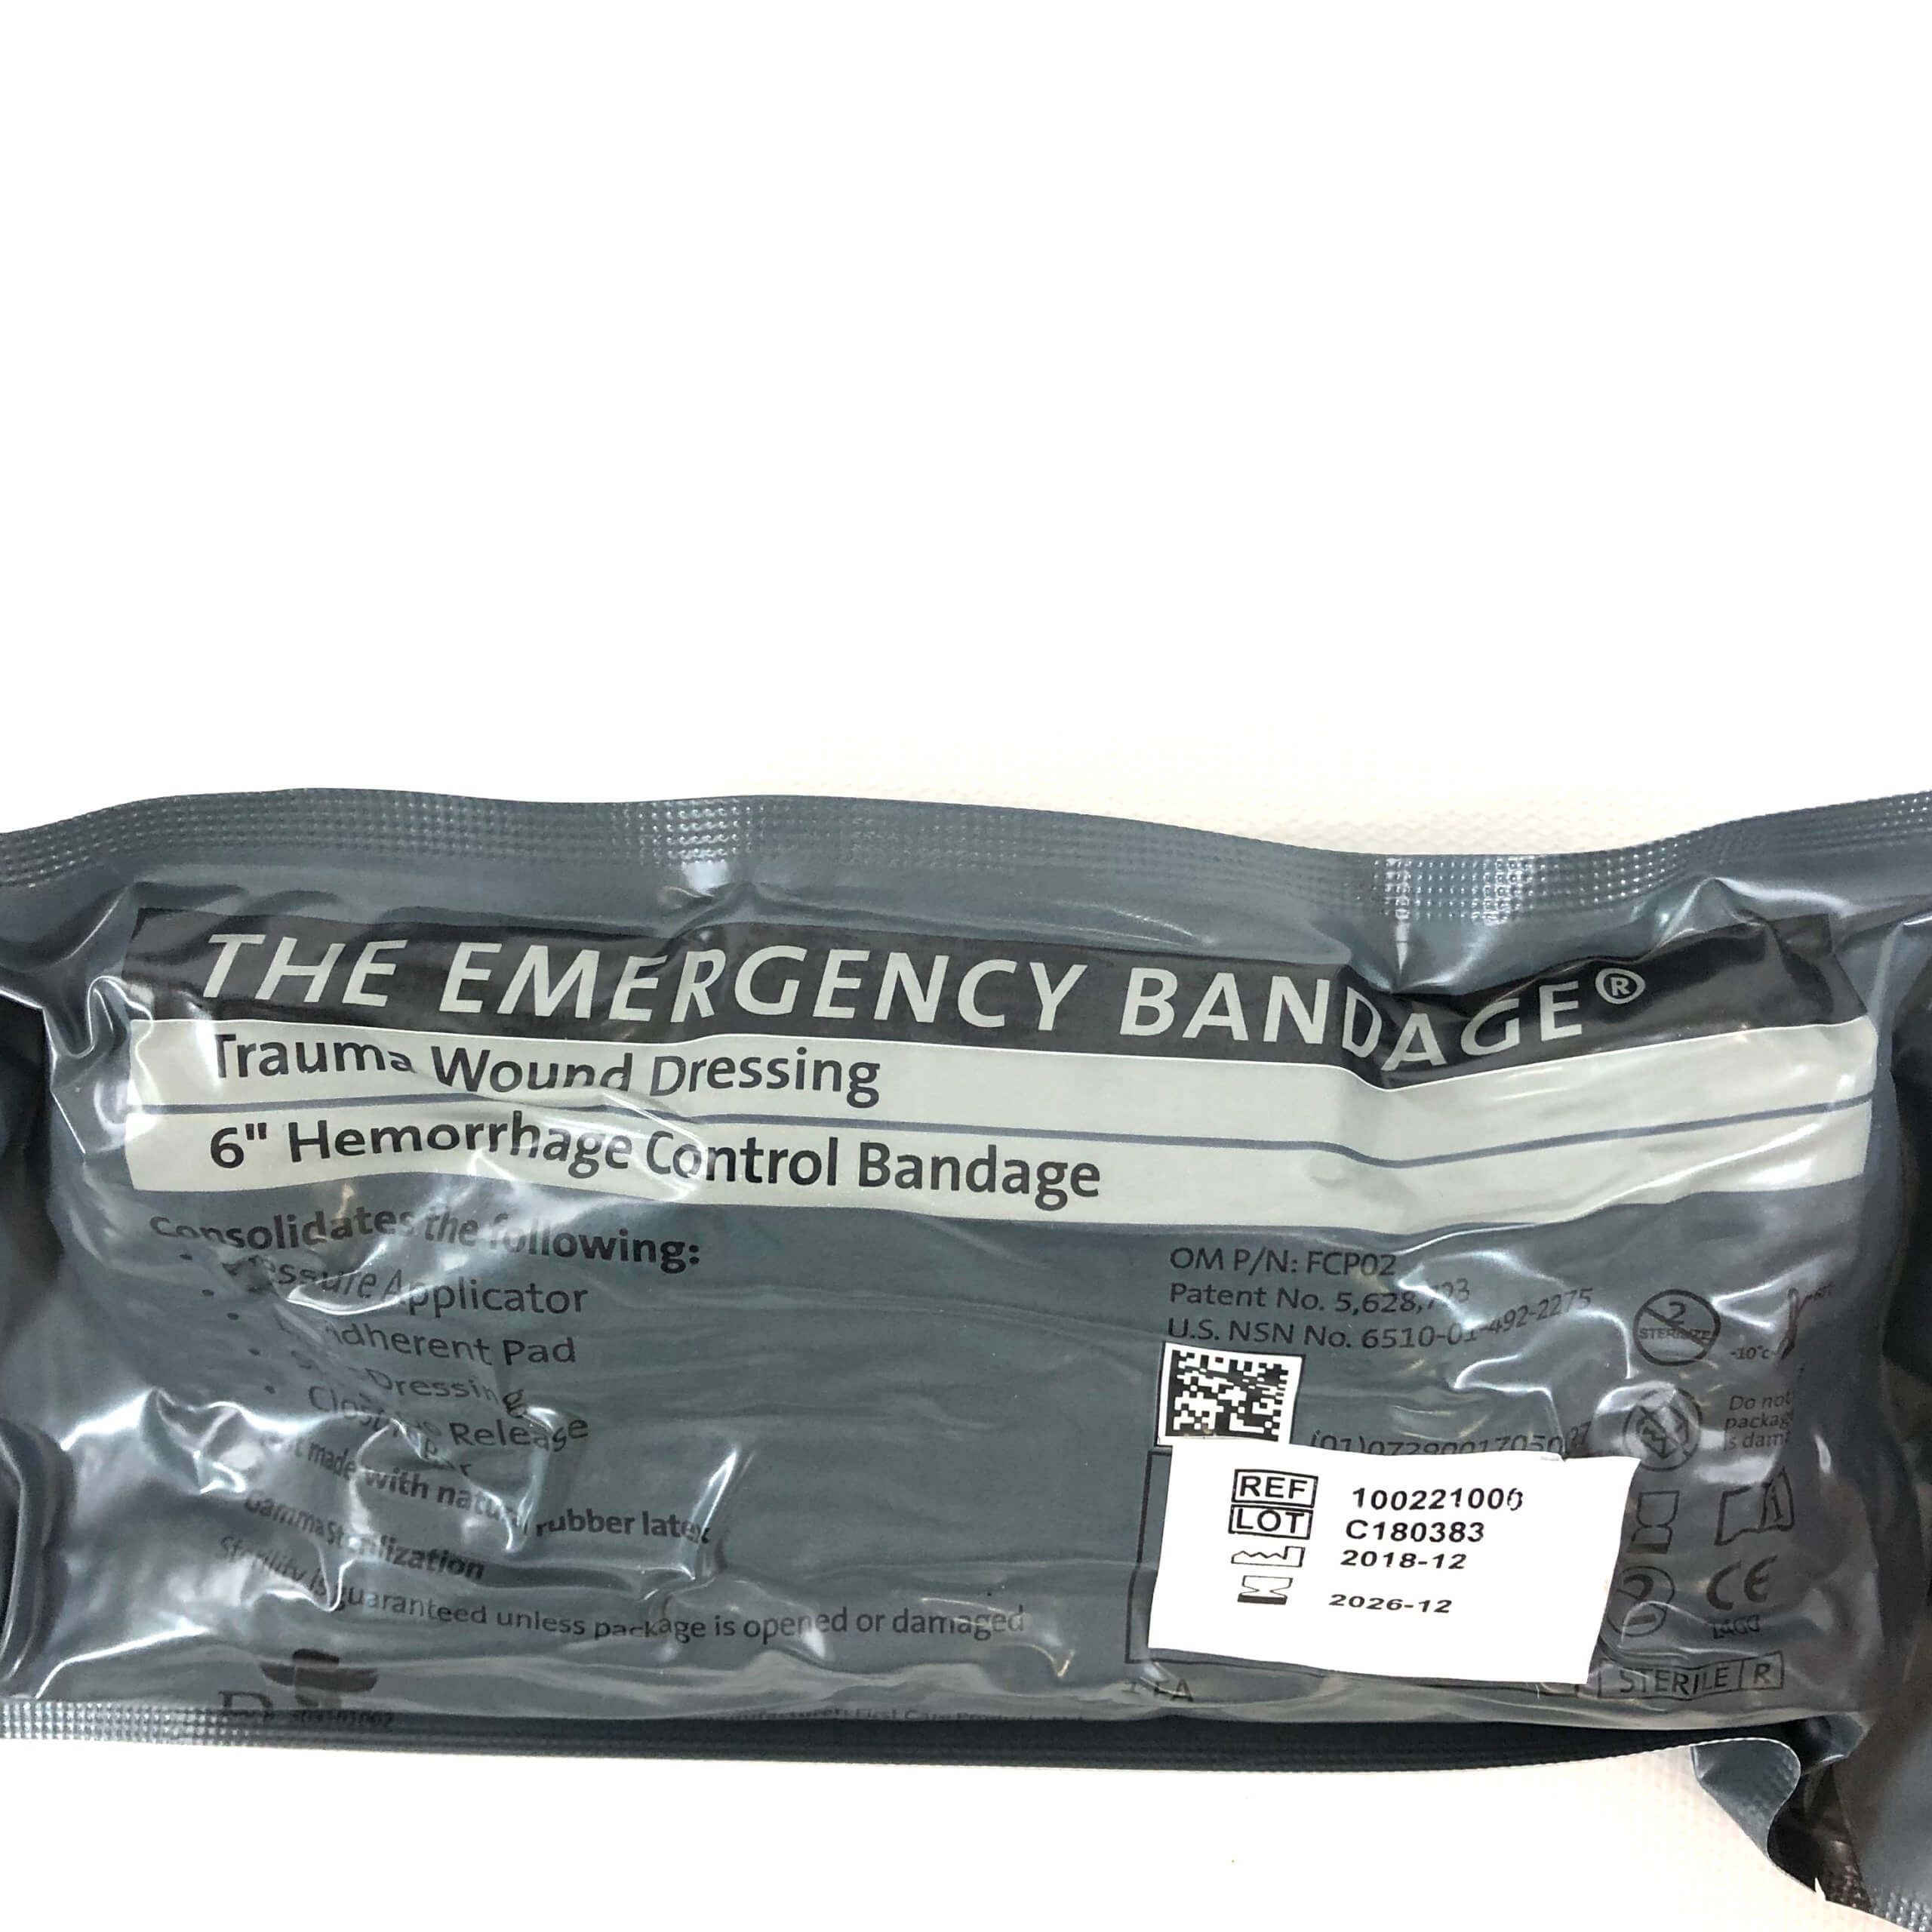 Israeli Emergency Bandages